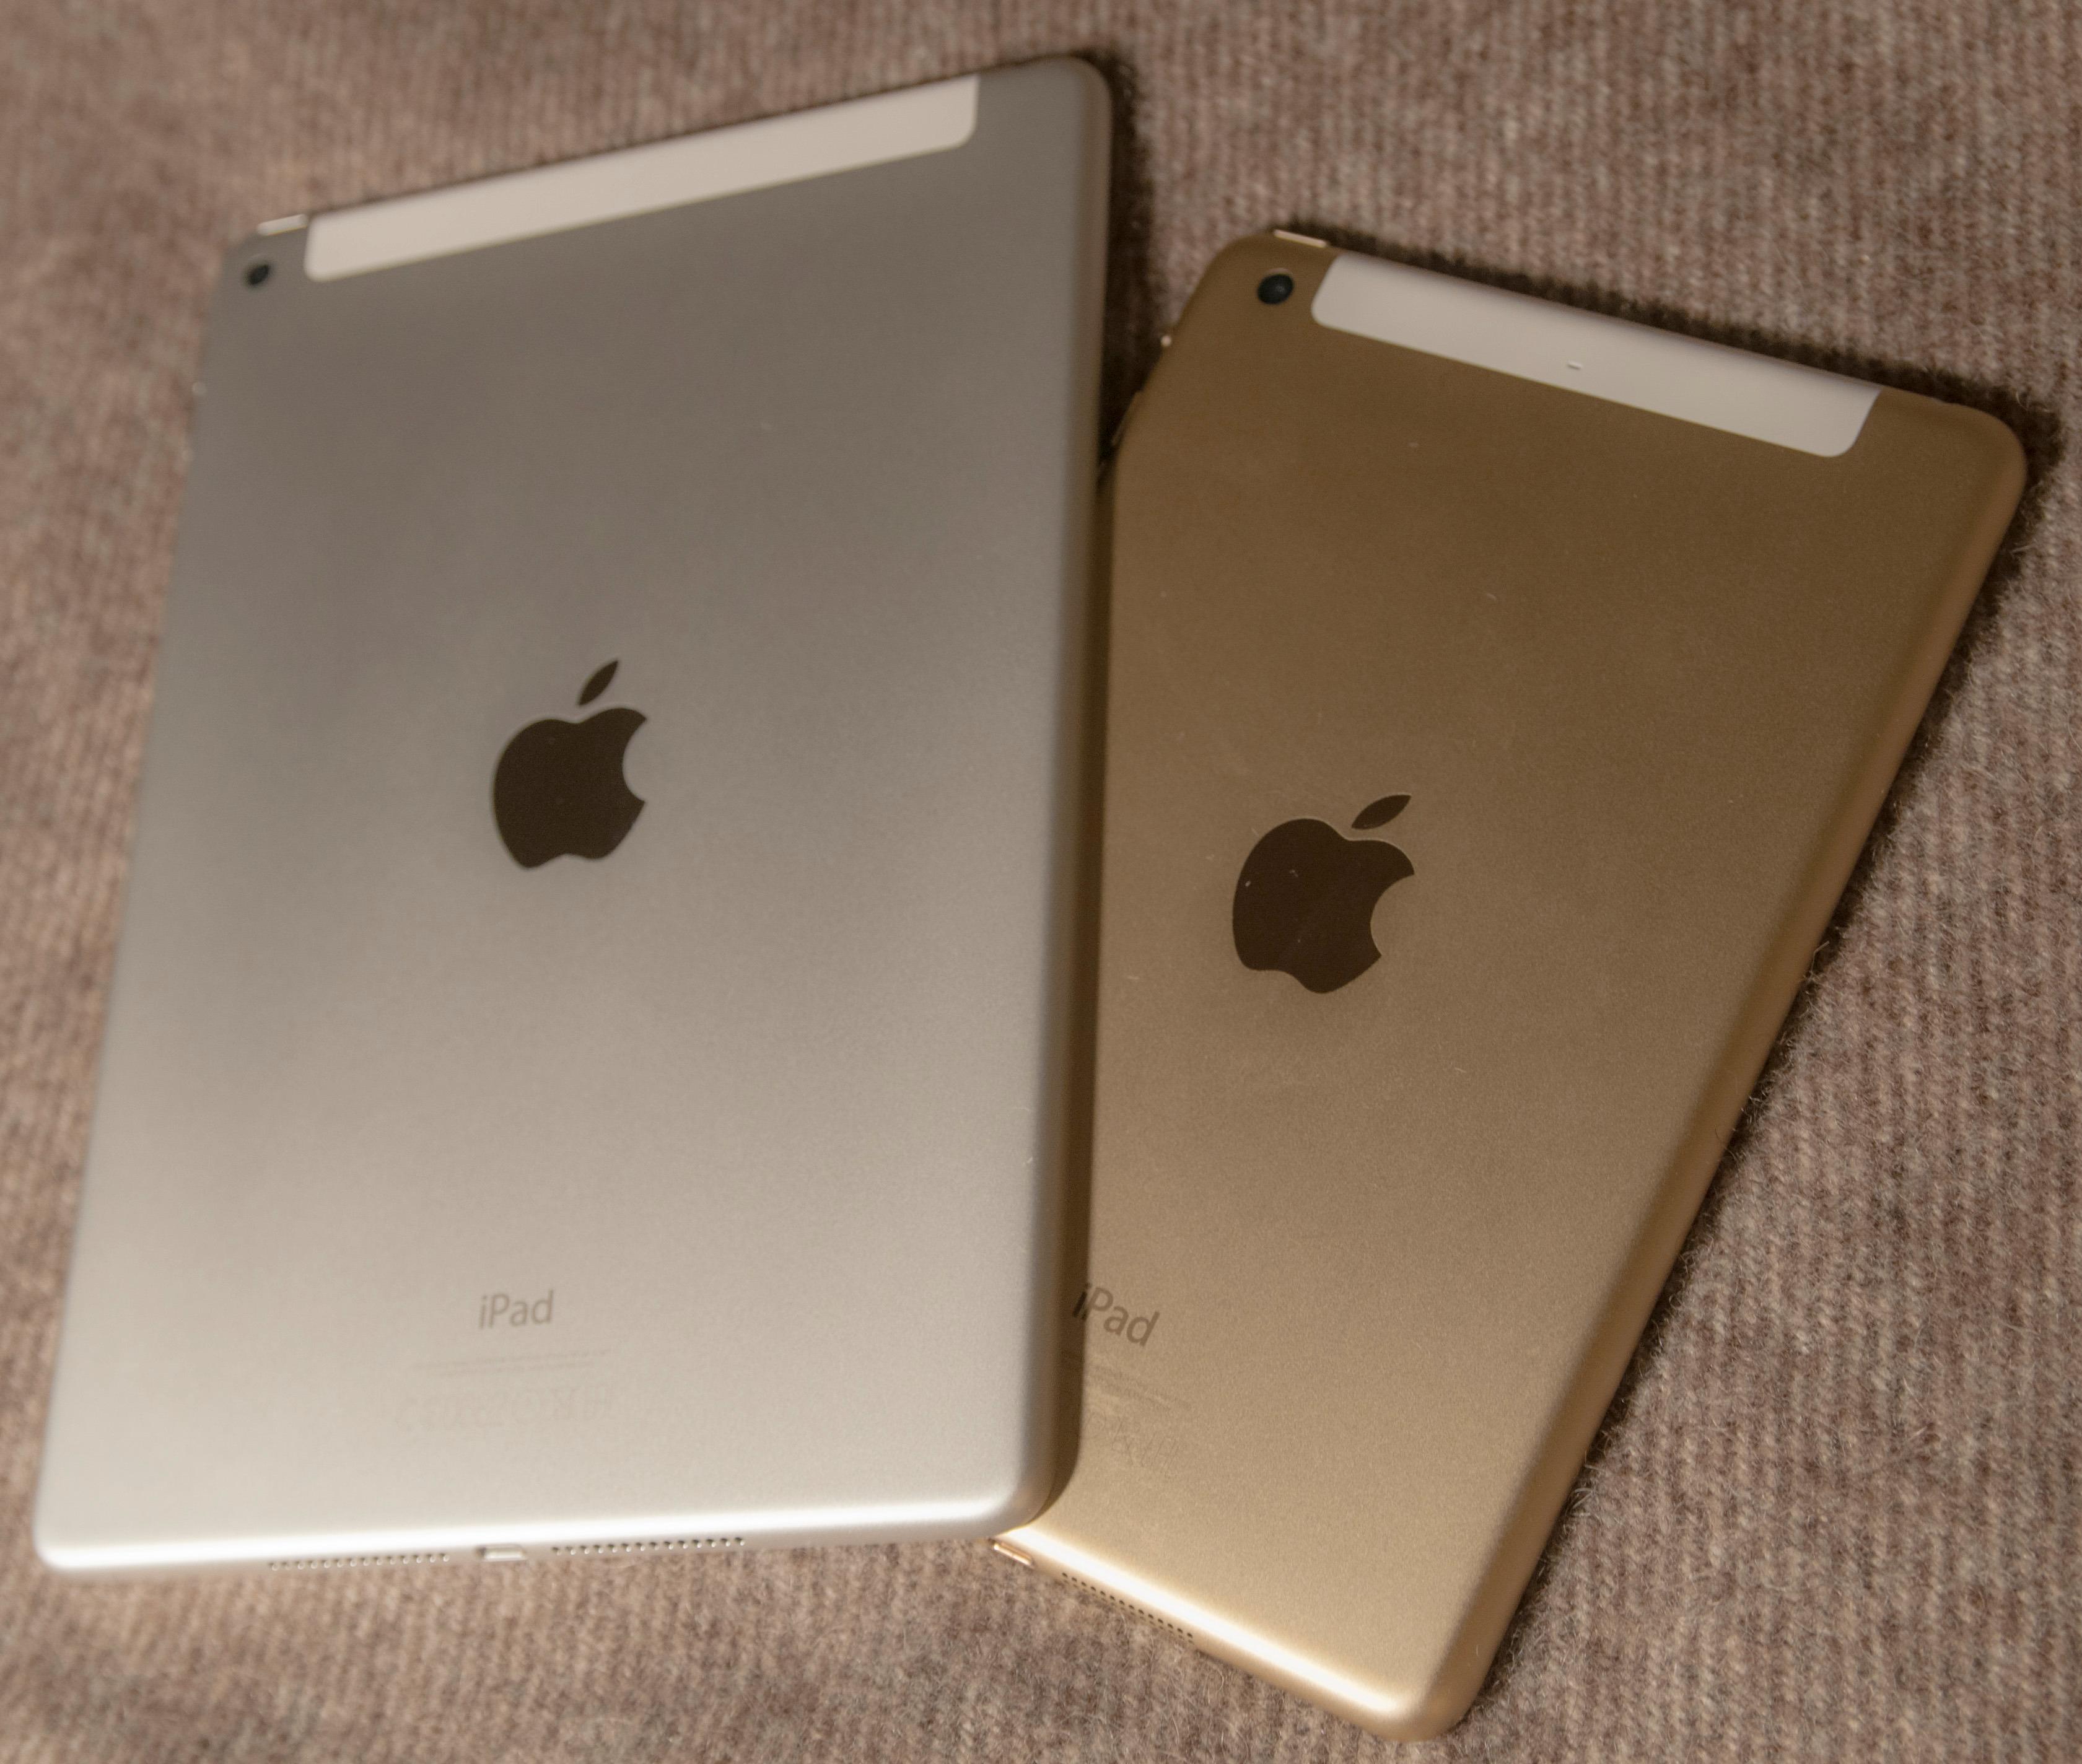 iPad Air 2 til venstre, og iPad Mini 3 til høyre. Begge fås i fargene sølv, «Space Grey» og gull.Foto: Finn Jarle Kvalheim, Tek.no